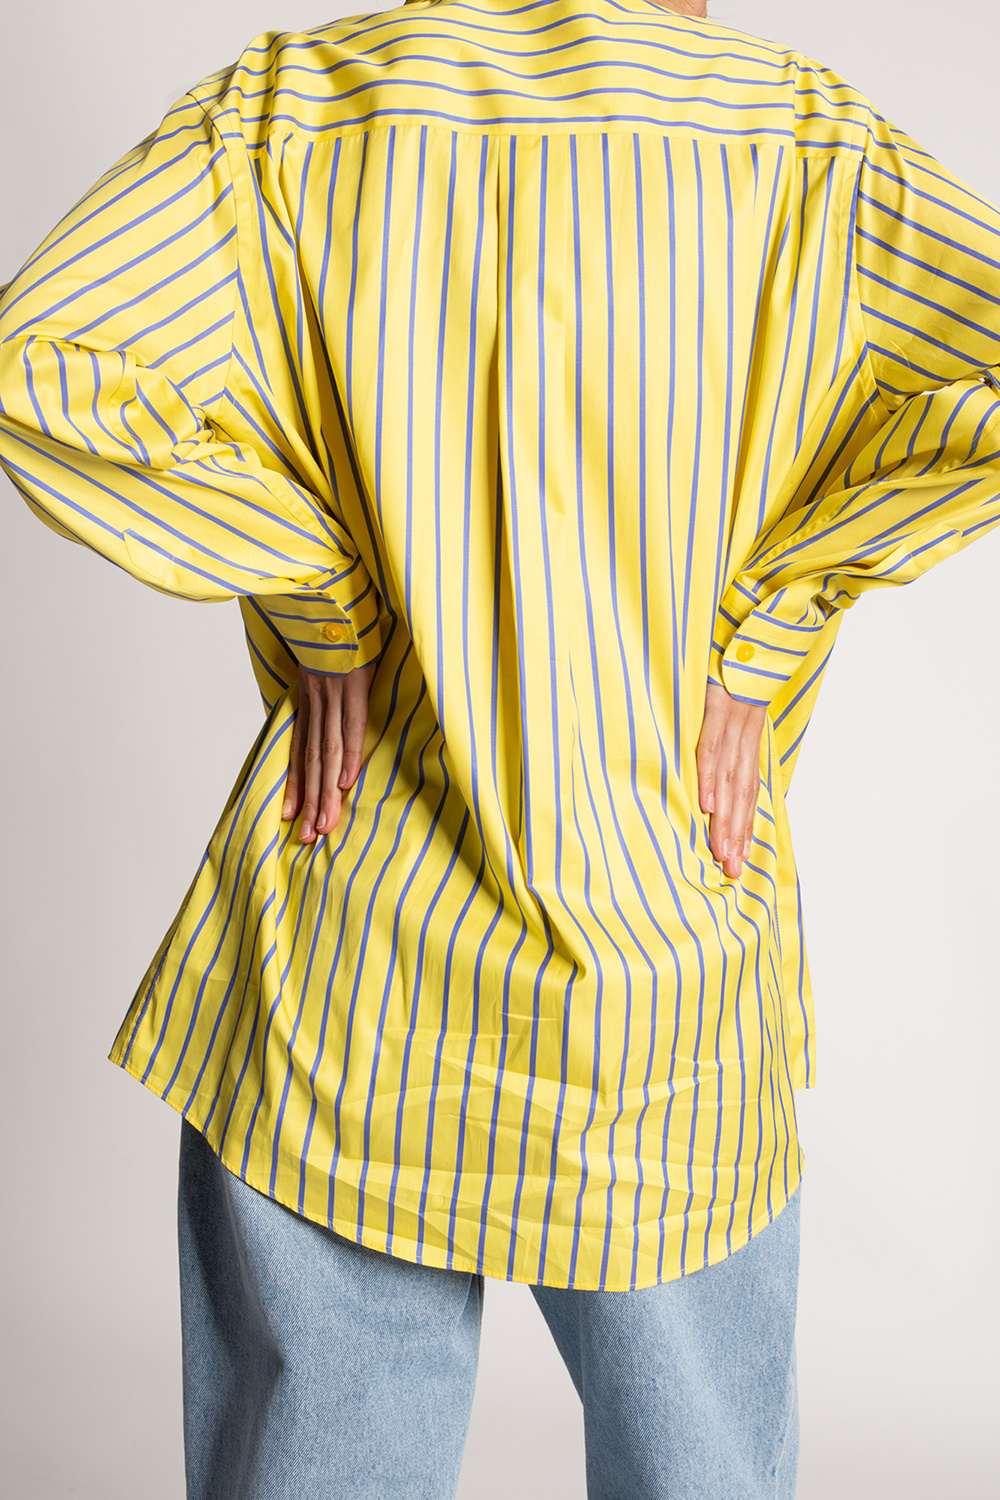 Etro Striped shirt | Women's Clothing | IetpShops